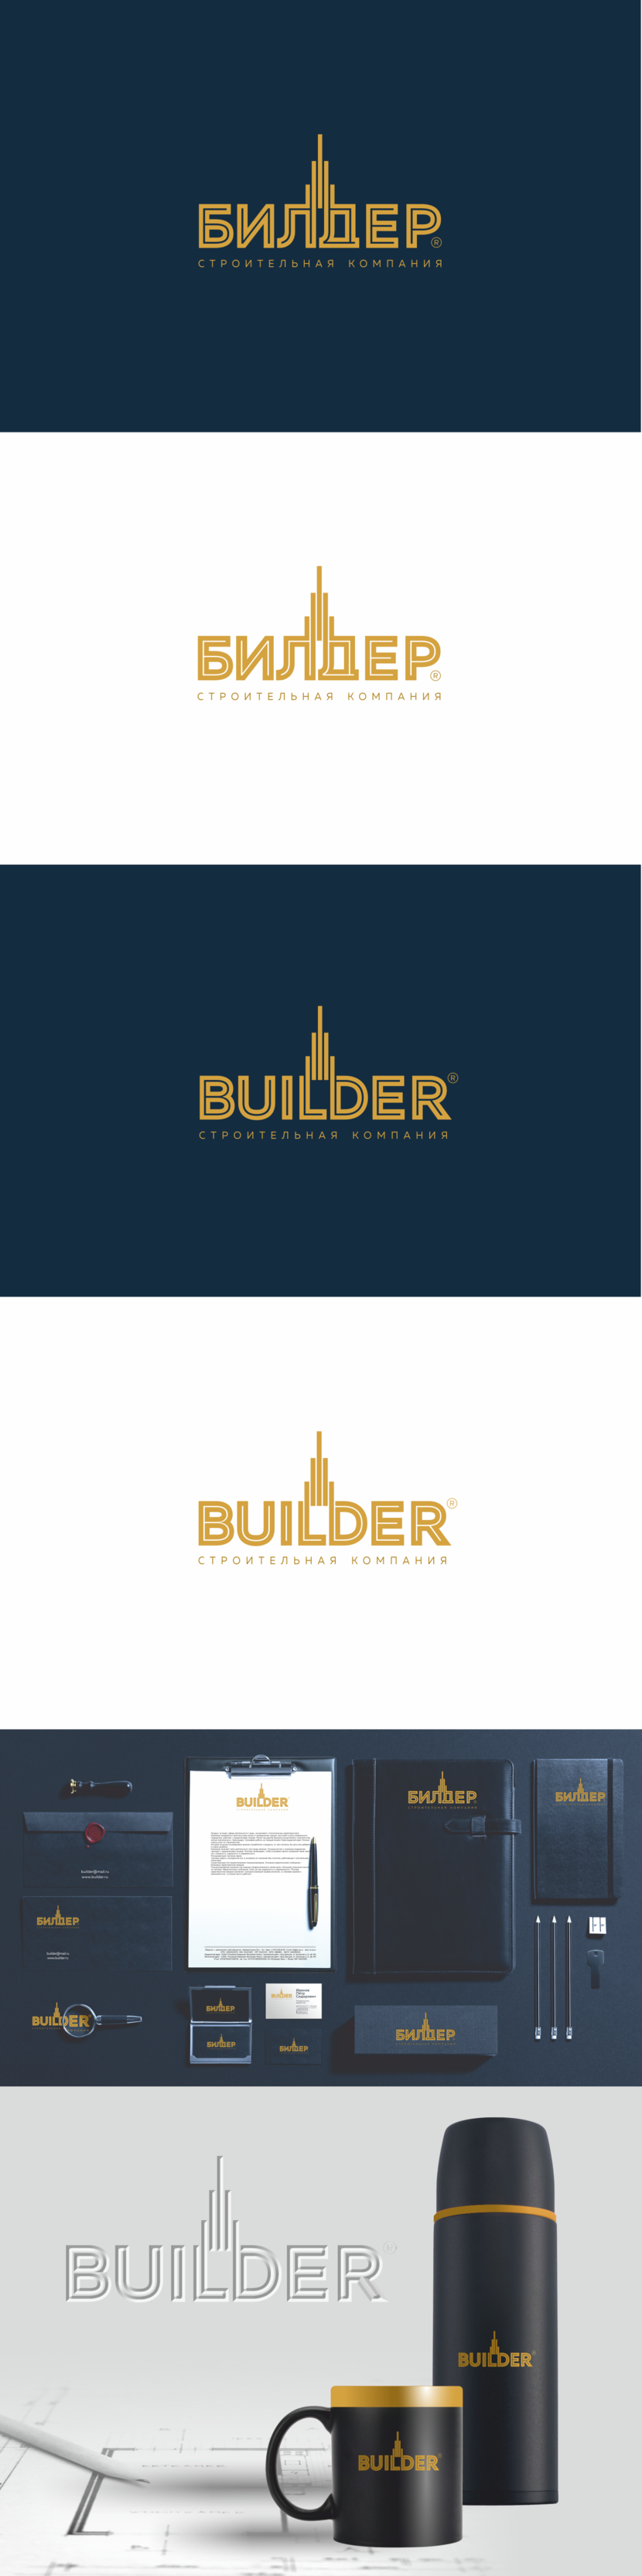 . Логотип и фирменный стиль для строительной компании